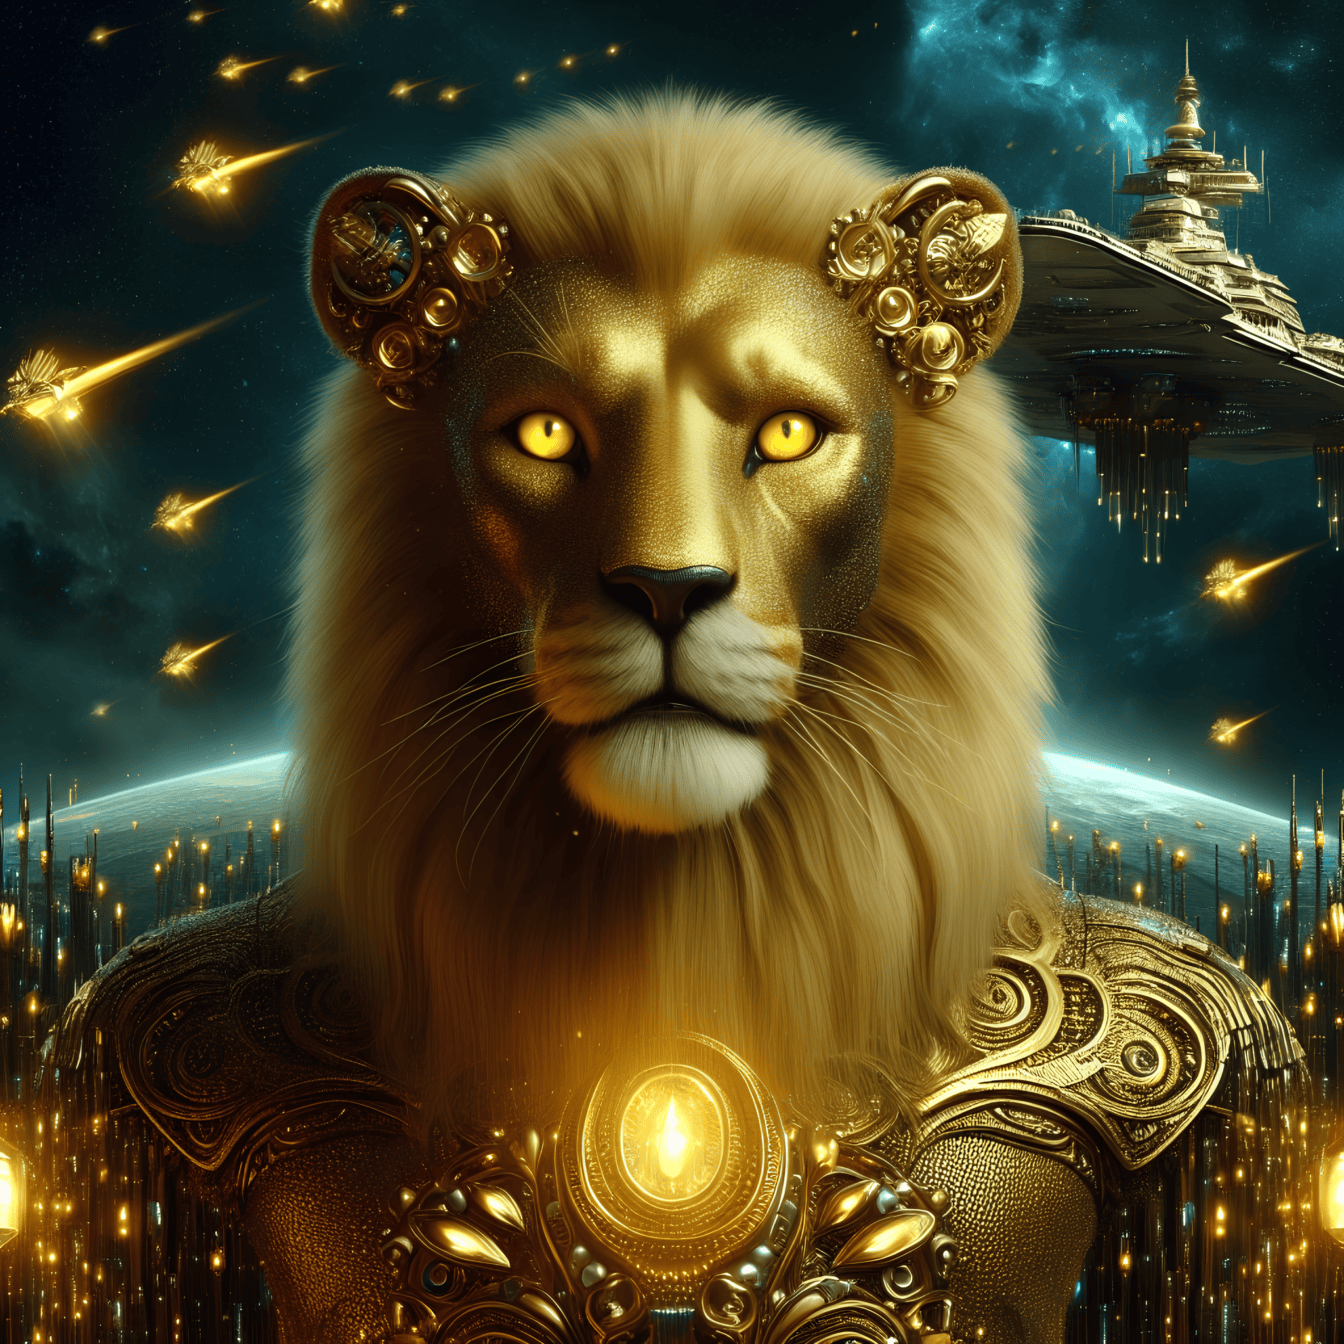 Kultainen leijona muukalainen haarniskassa futuristisen avaruusaluksen lentäessä taustalla